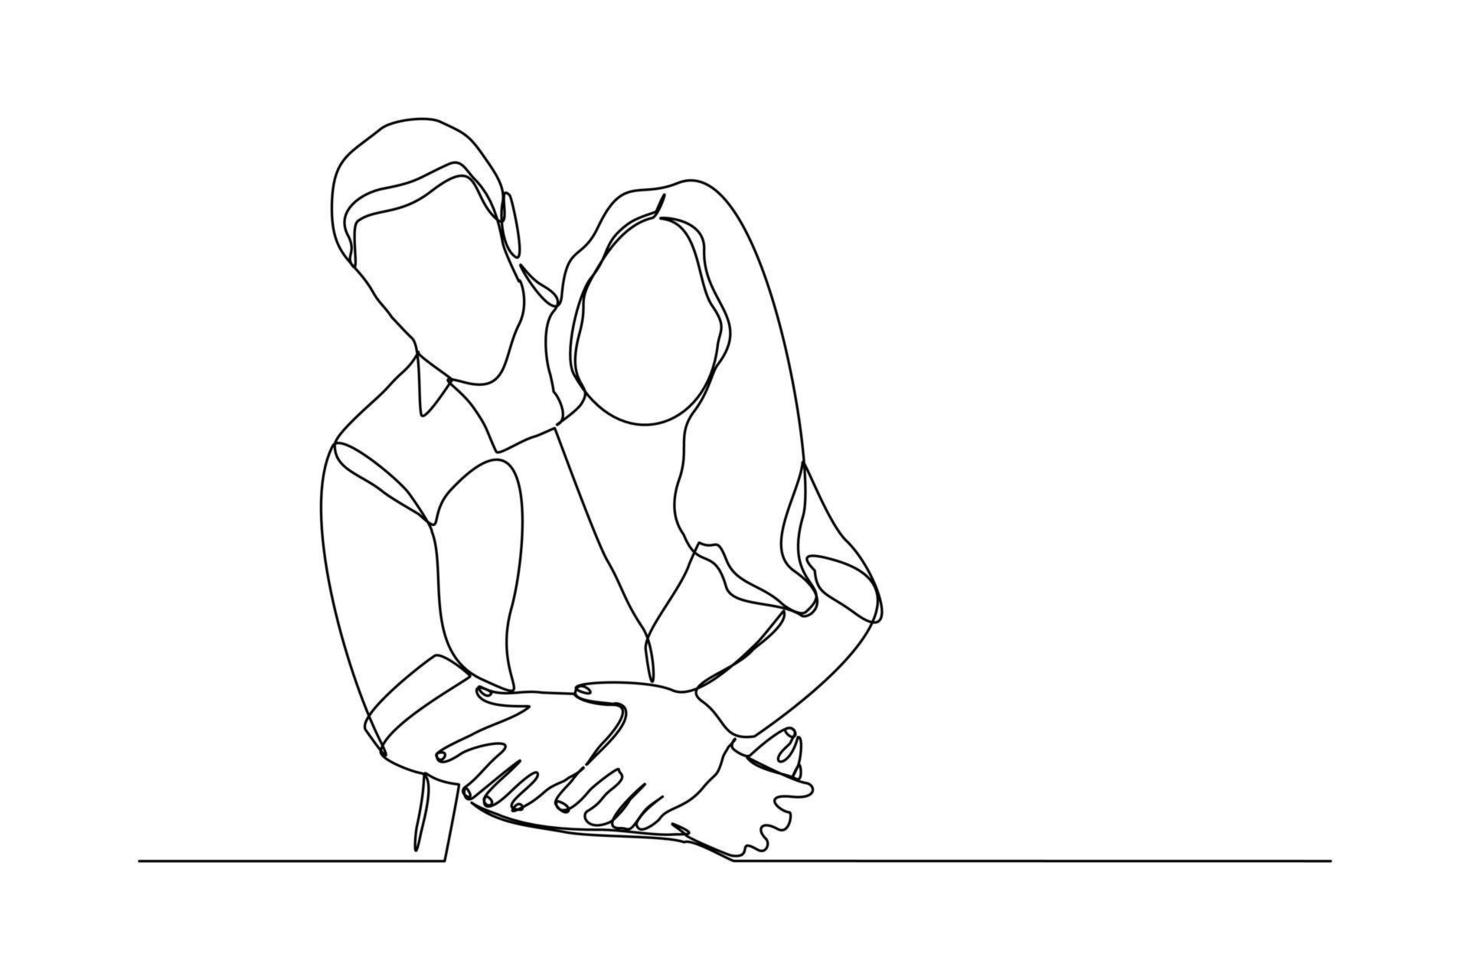 disegno a tratteggio continuo dell'abbraccio di una coppia romantica. singola linea d'arte di giovani coppie felici che si abbracciano vettore